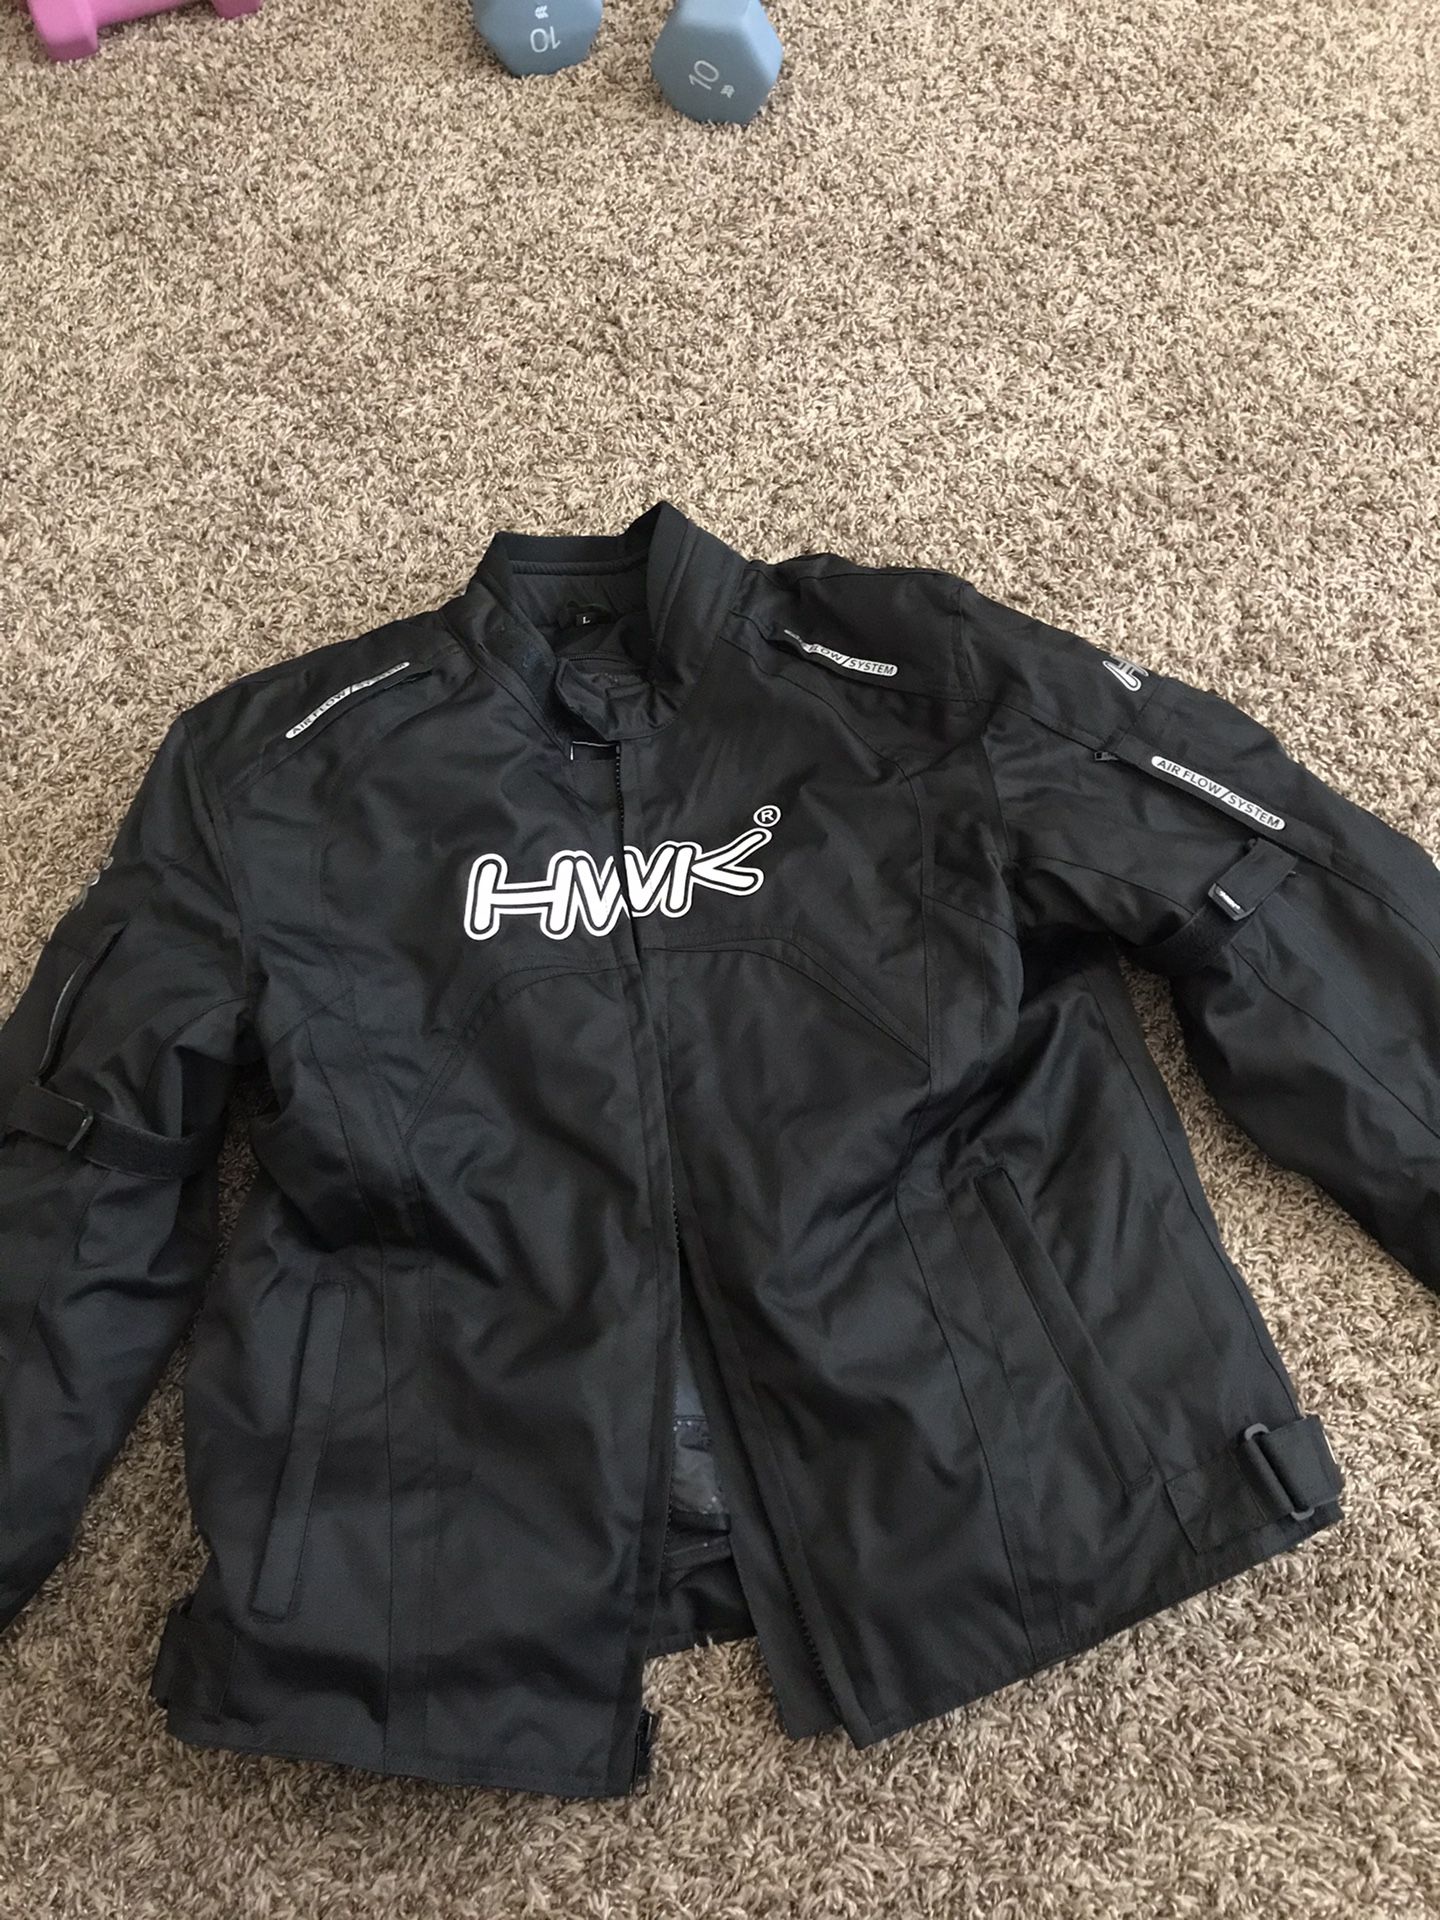 HWK motorcycle jacket(padded)